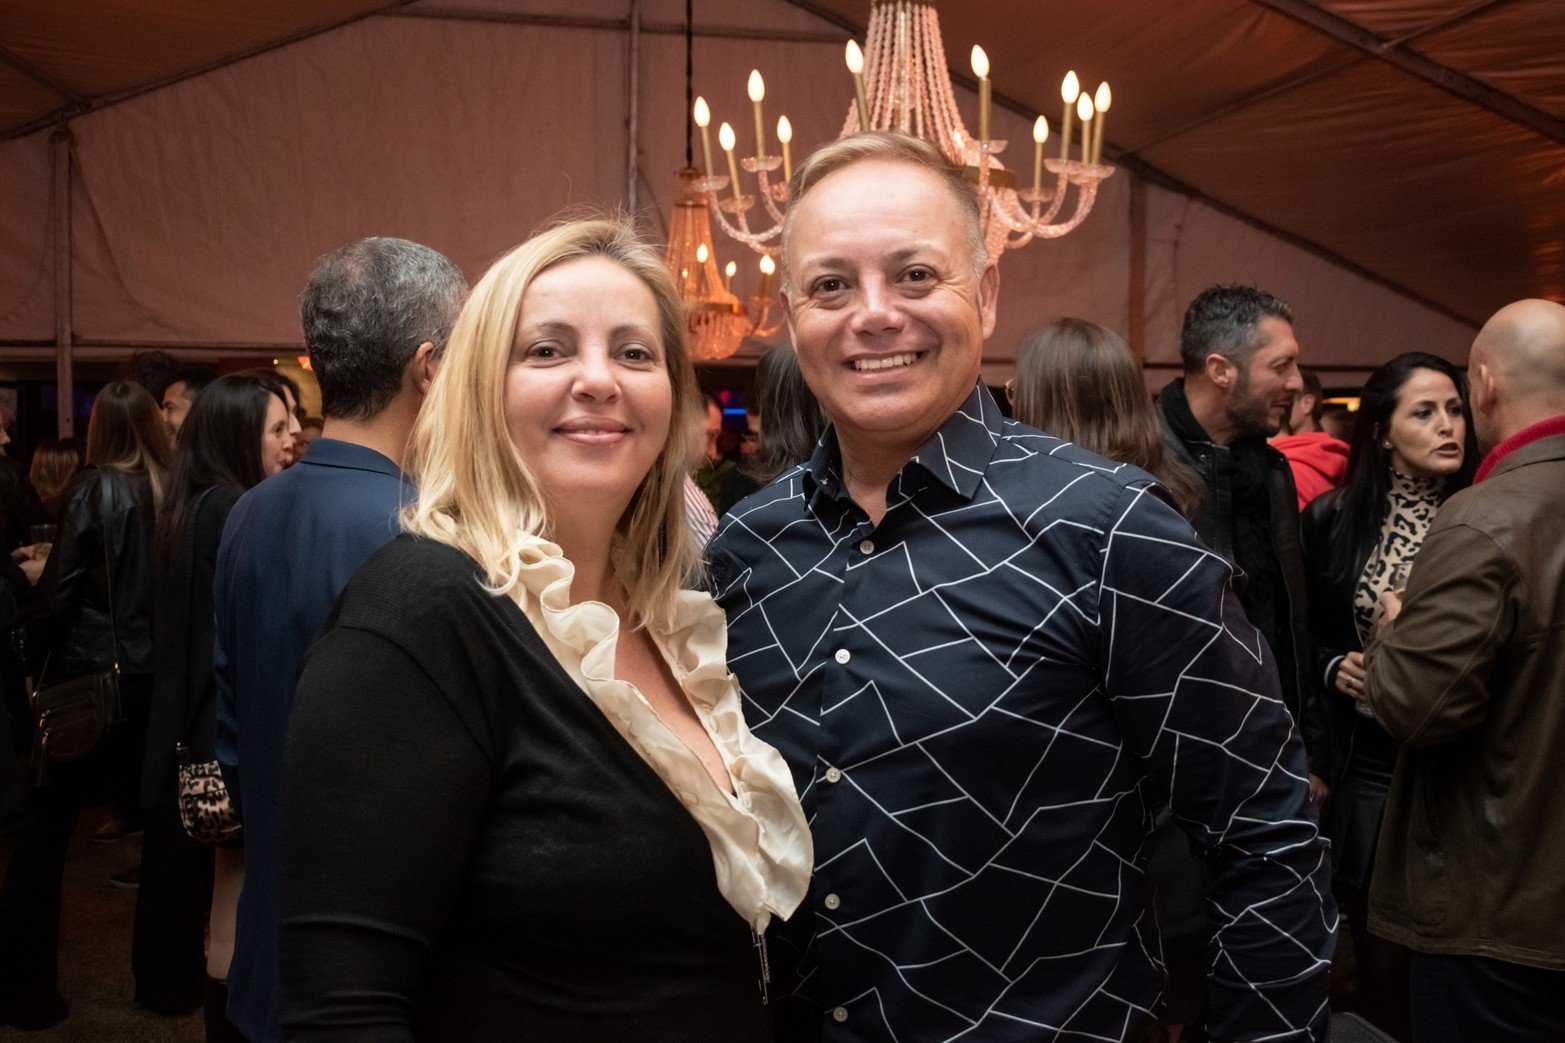 AB Sonido y Ríos de Gula celebraron juntos un nuevo aniversario en una espectacular fiesta que reunió a familiares, clientes, empresas y amigos a compartir los logros alcanzados por ambas empresas.